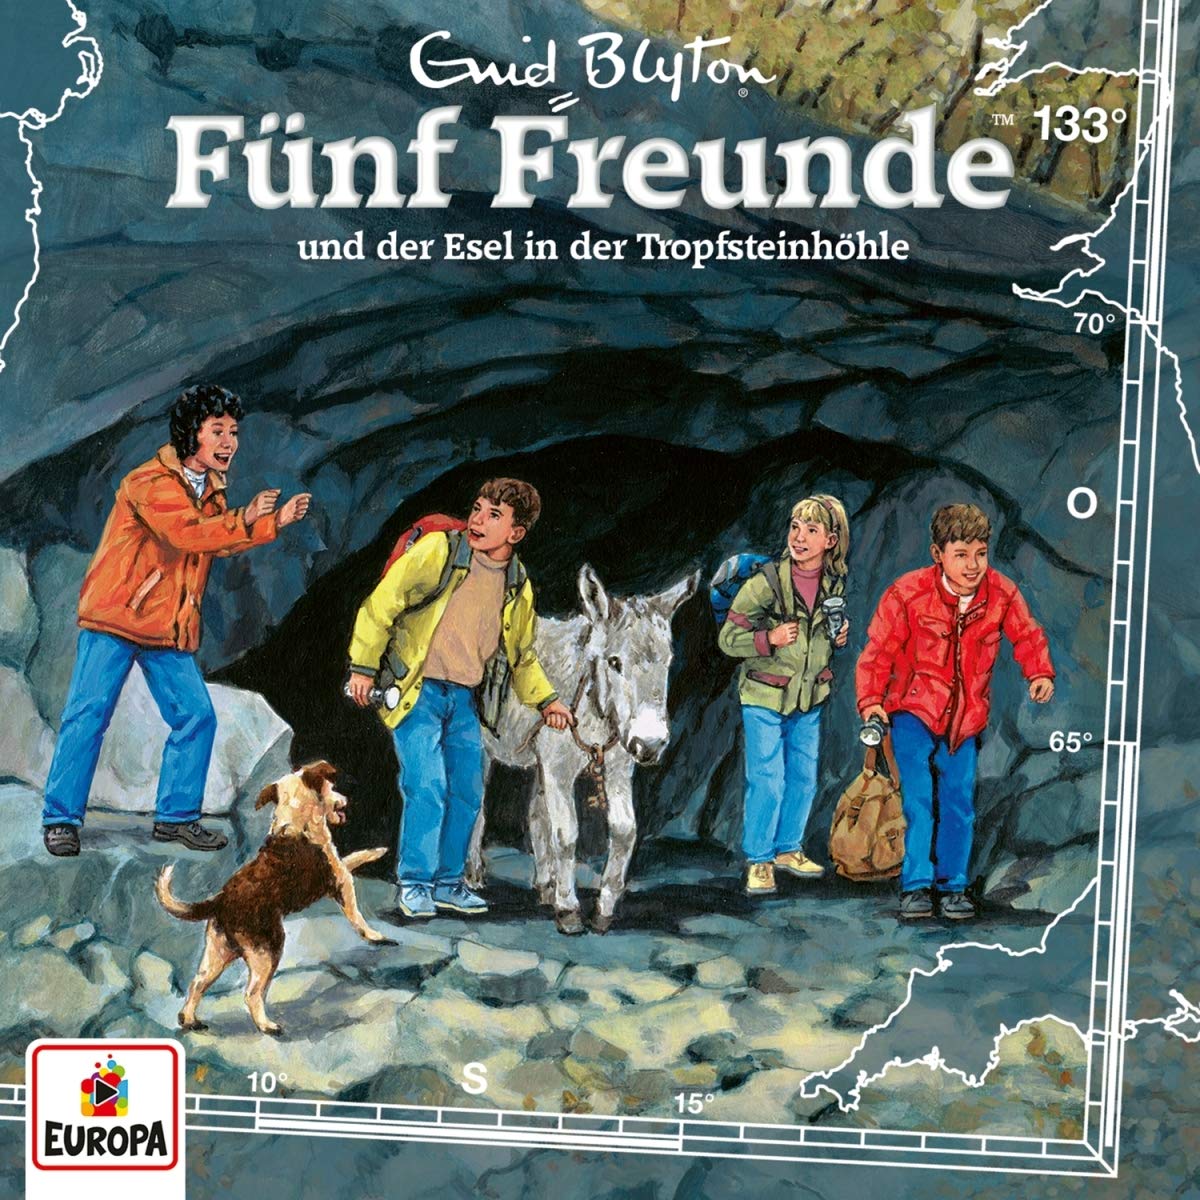 Fünf Freunde - Fünf Freunde und der Esel in der Tropfsteinhöhle